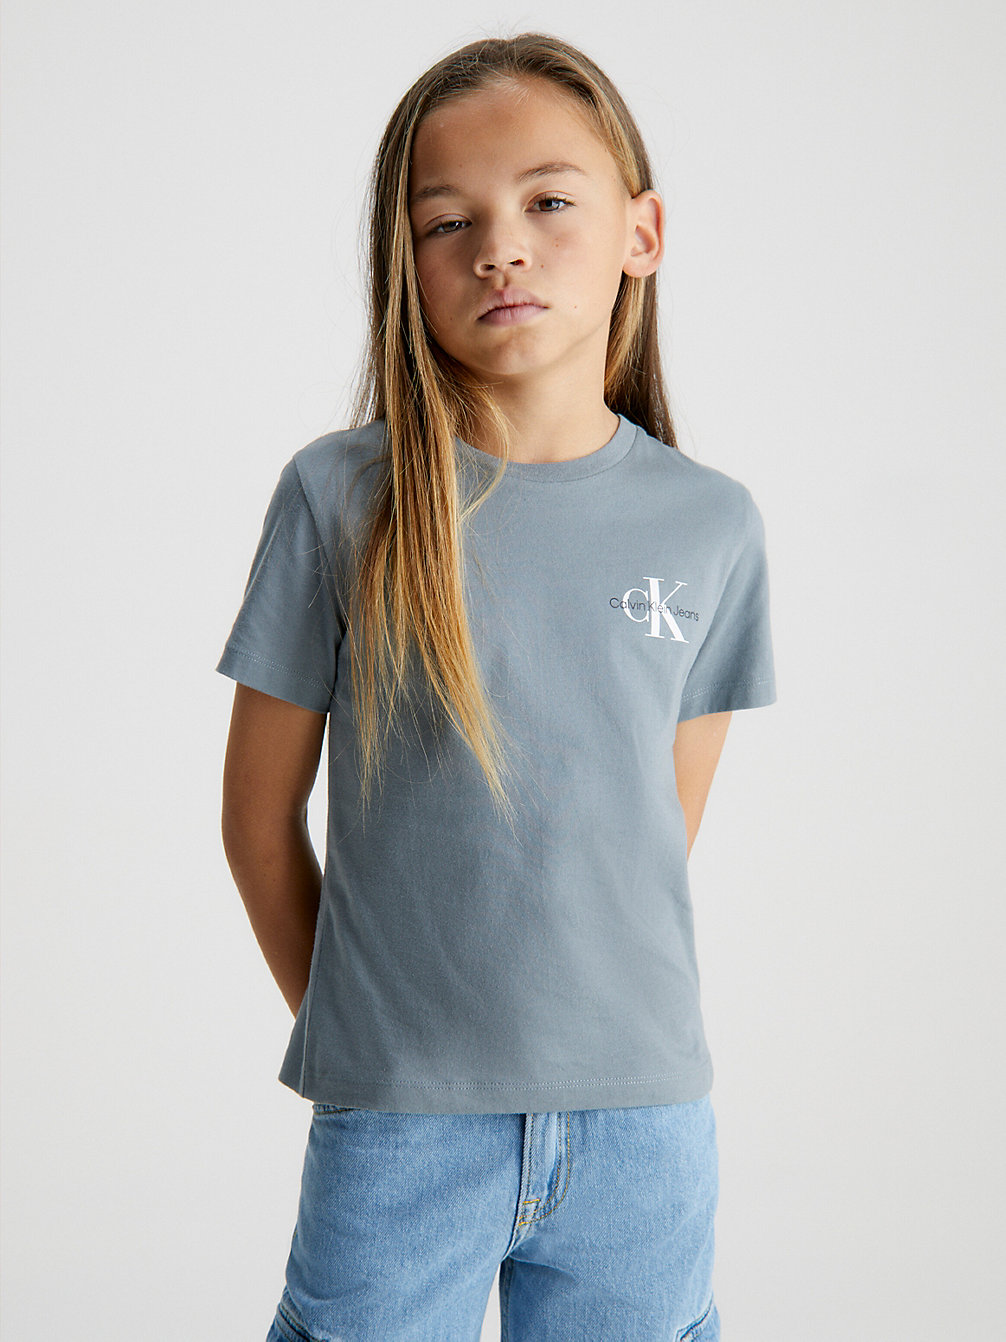 OVERCAST GREY T-Shirt Aus Bio-Baumwolle undefined boys Calvin Klein